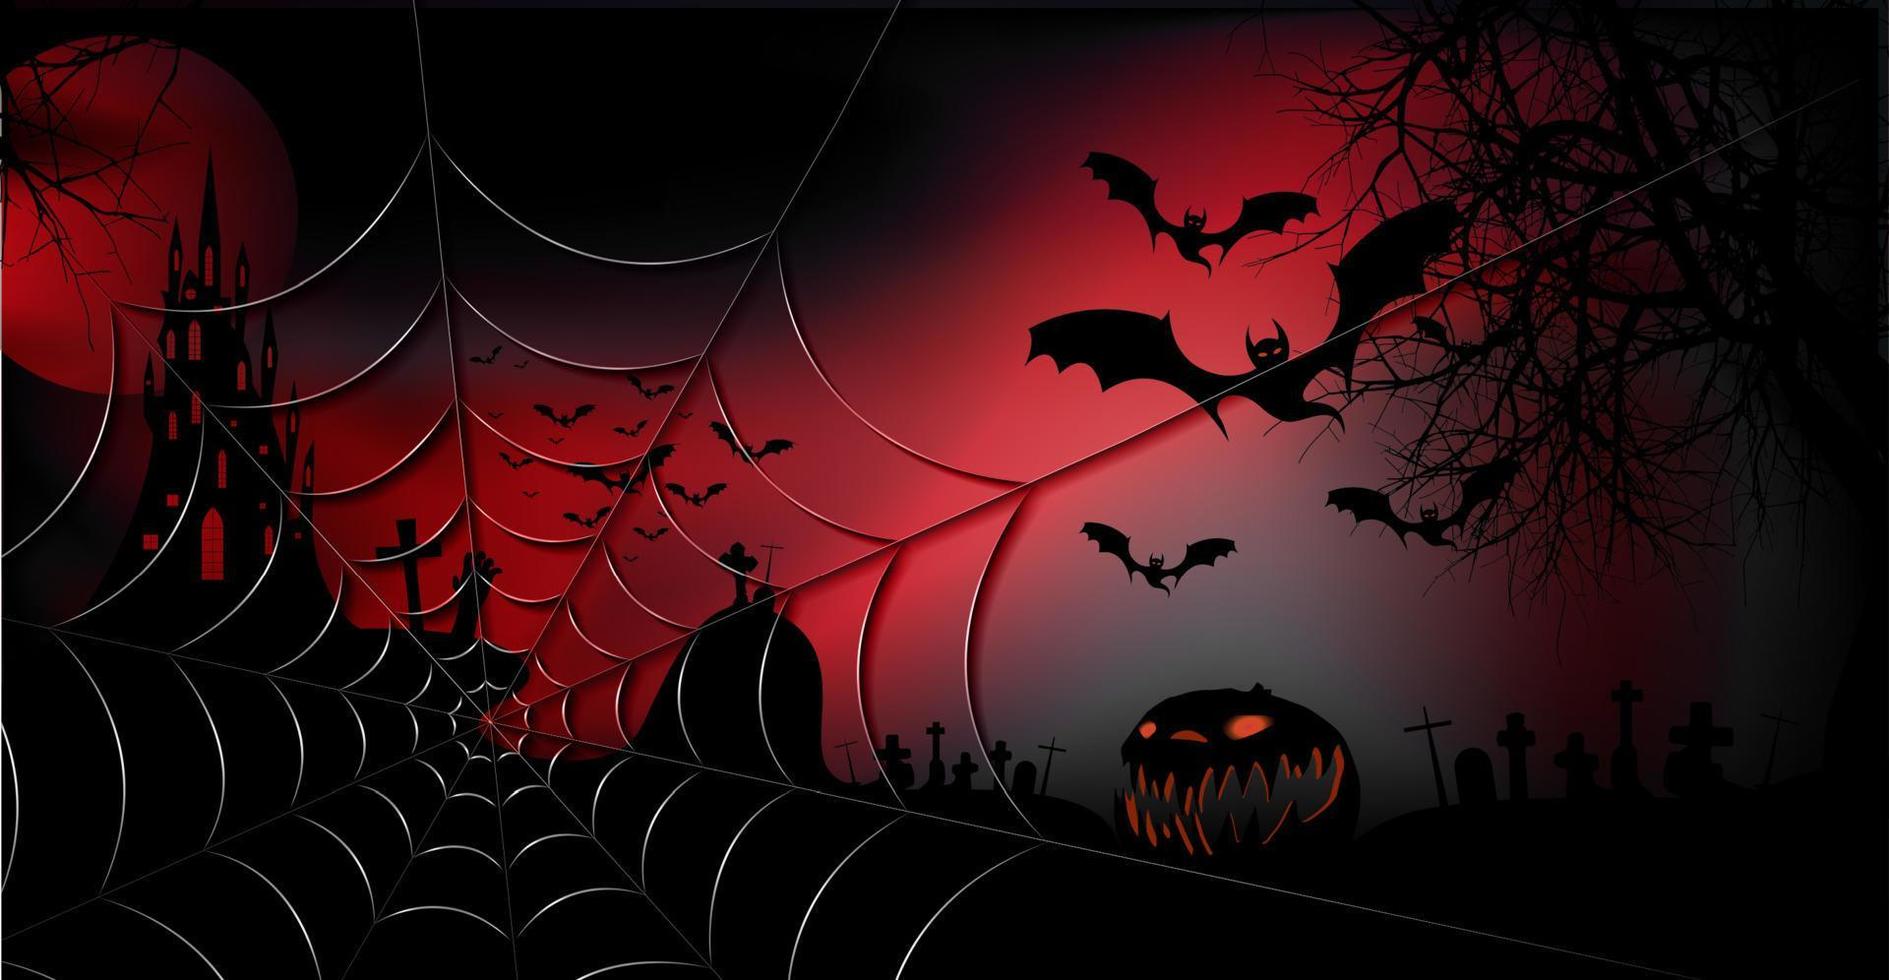 banner festa di halloween, sfondo rosso scuro spettrale, sagome di personaggi e pipistrelli spaventosi con castello infestato gotico, concetto di tema horror, ragnatela dorata e cimitero scuro, modelli vettoriali